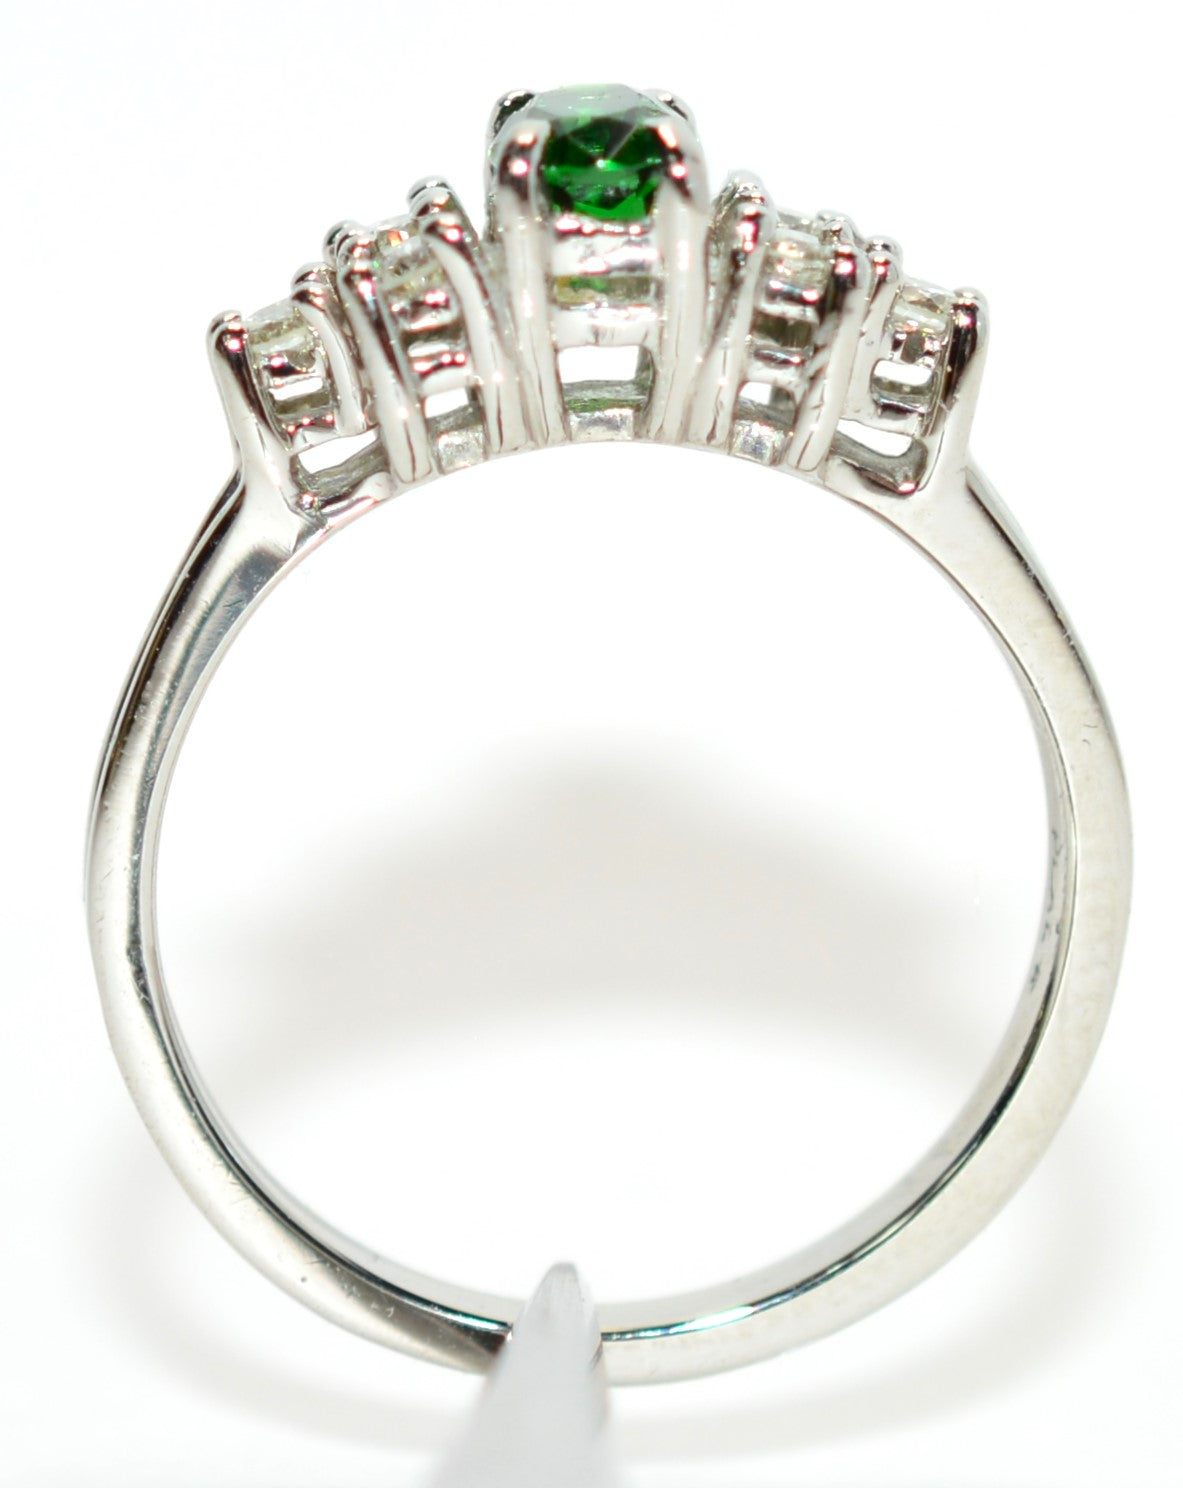 Natural Tsavorite Garnet & Diamond Ring Solid Platinum .75tcw Gemstone Ring Engagement Ring Women's Ring Wedding Ring Bridal Jewelry Green